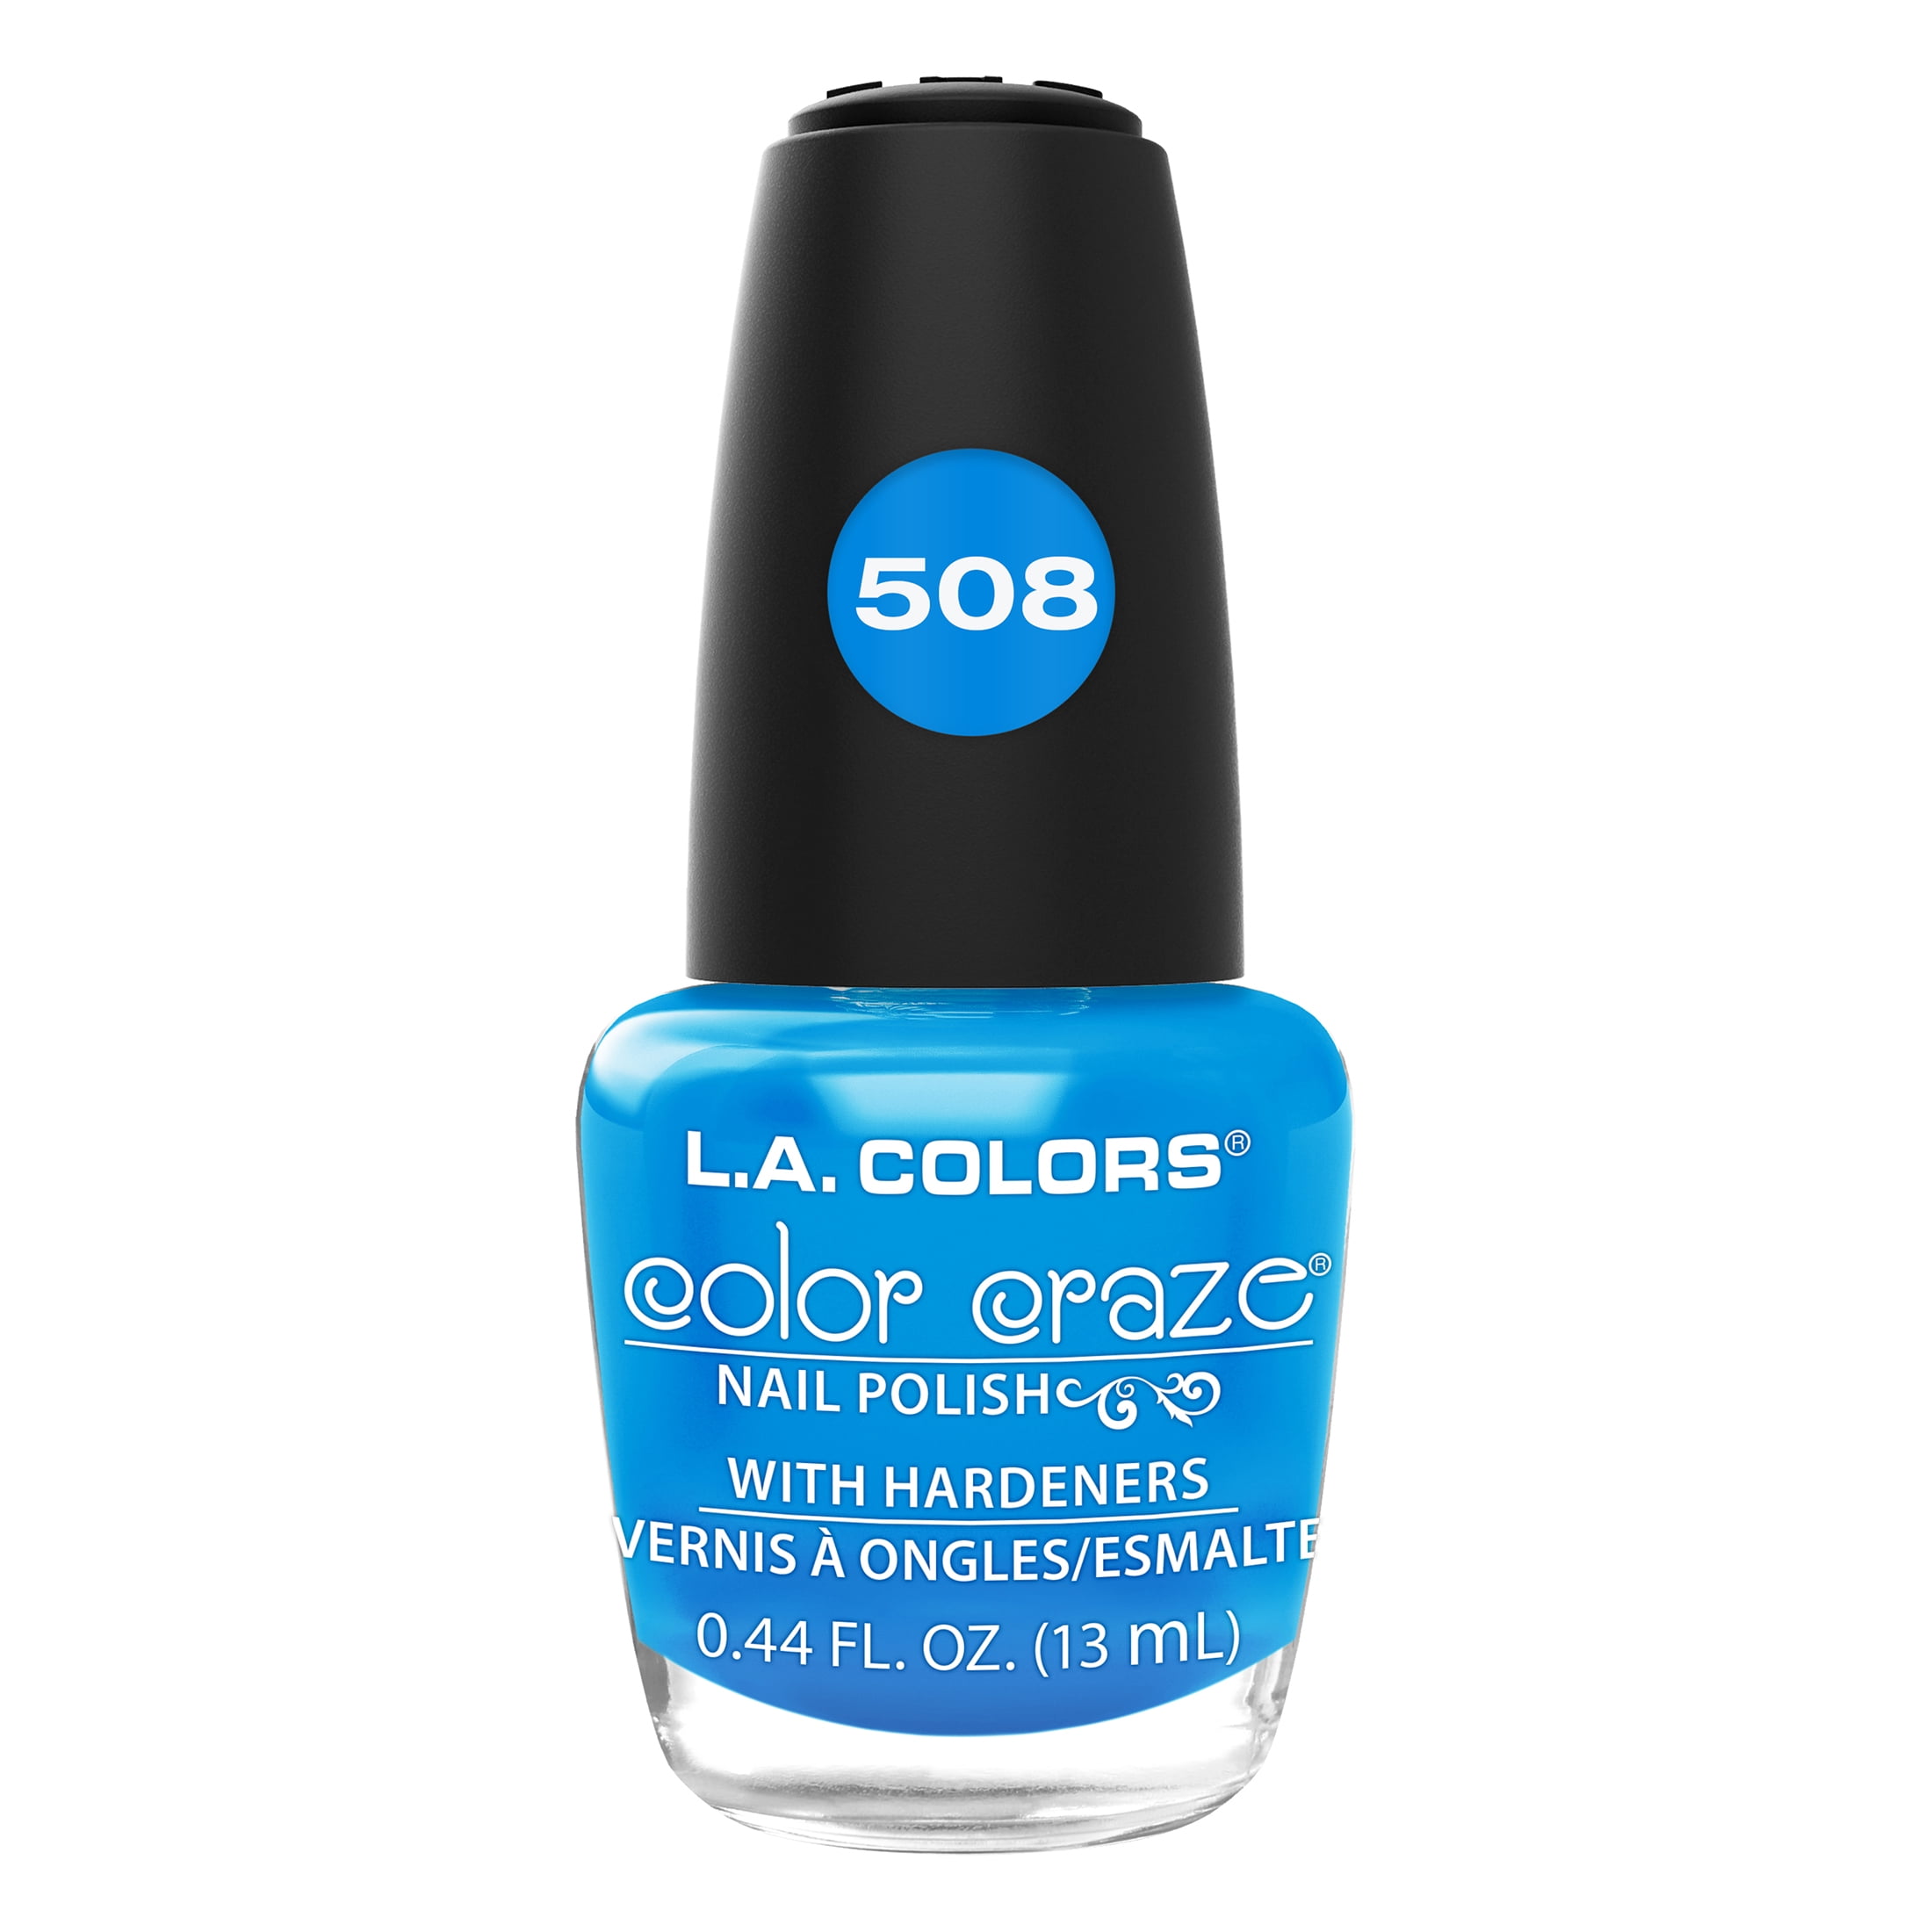 L.A. COLORS Color Craze Nail Polish, Aquatic, 0.44 fl oz